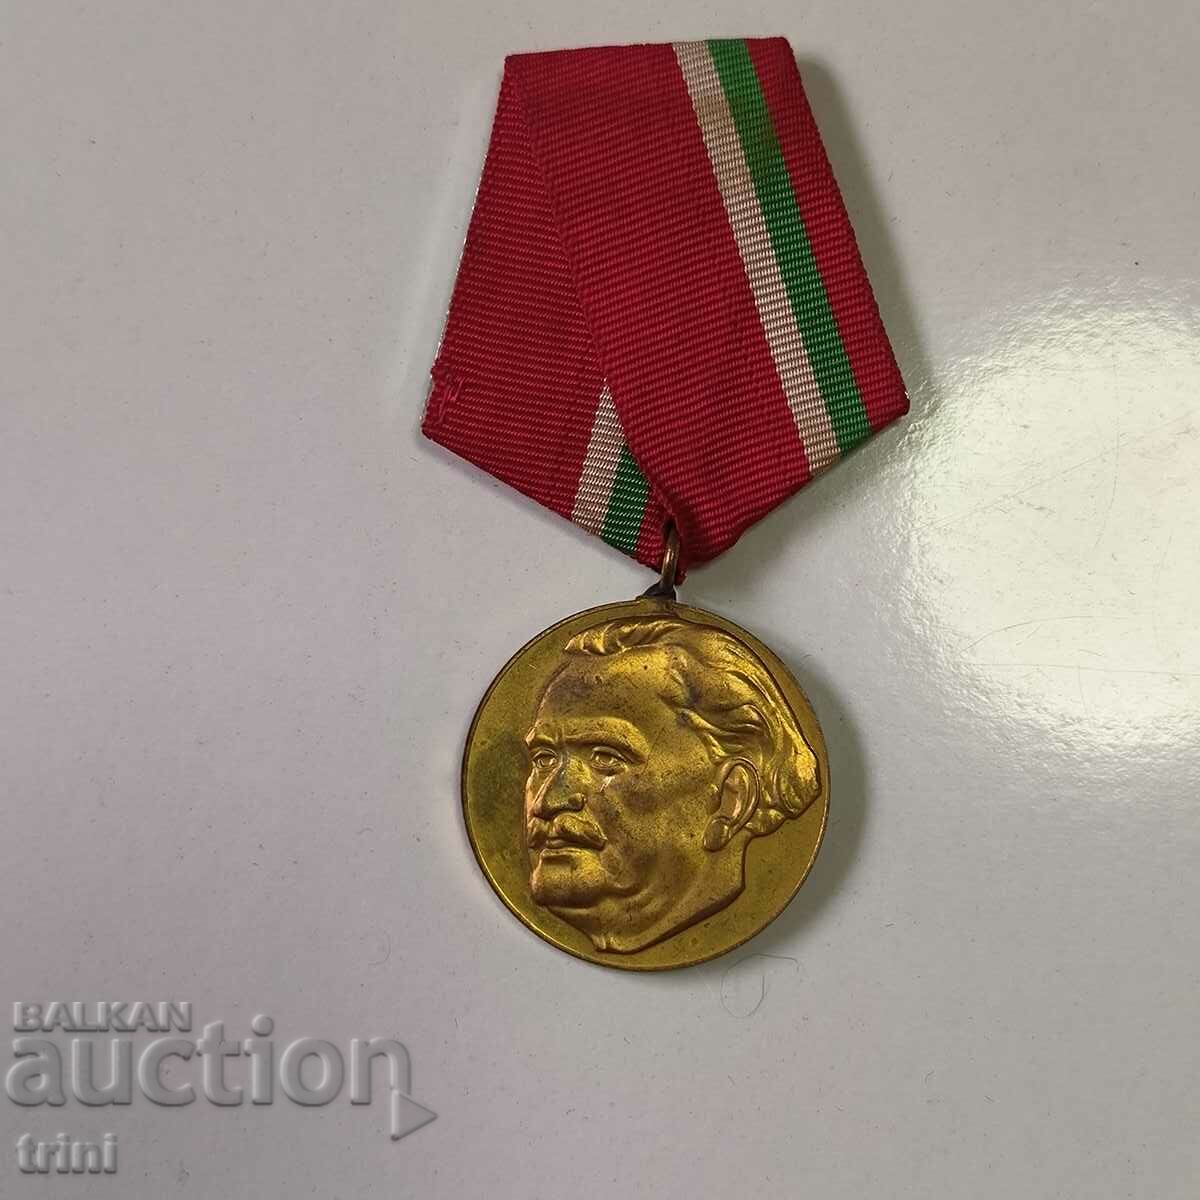 Medalie 100 de ani de la nașterea lui G. Dimitrov 1882-1982.